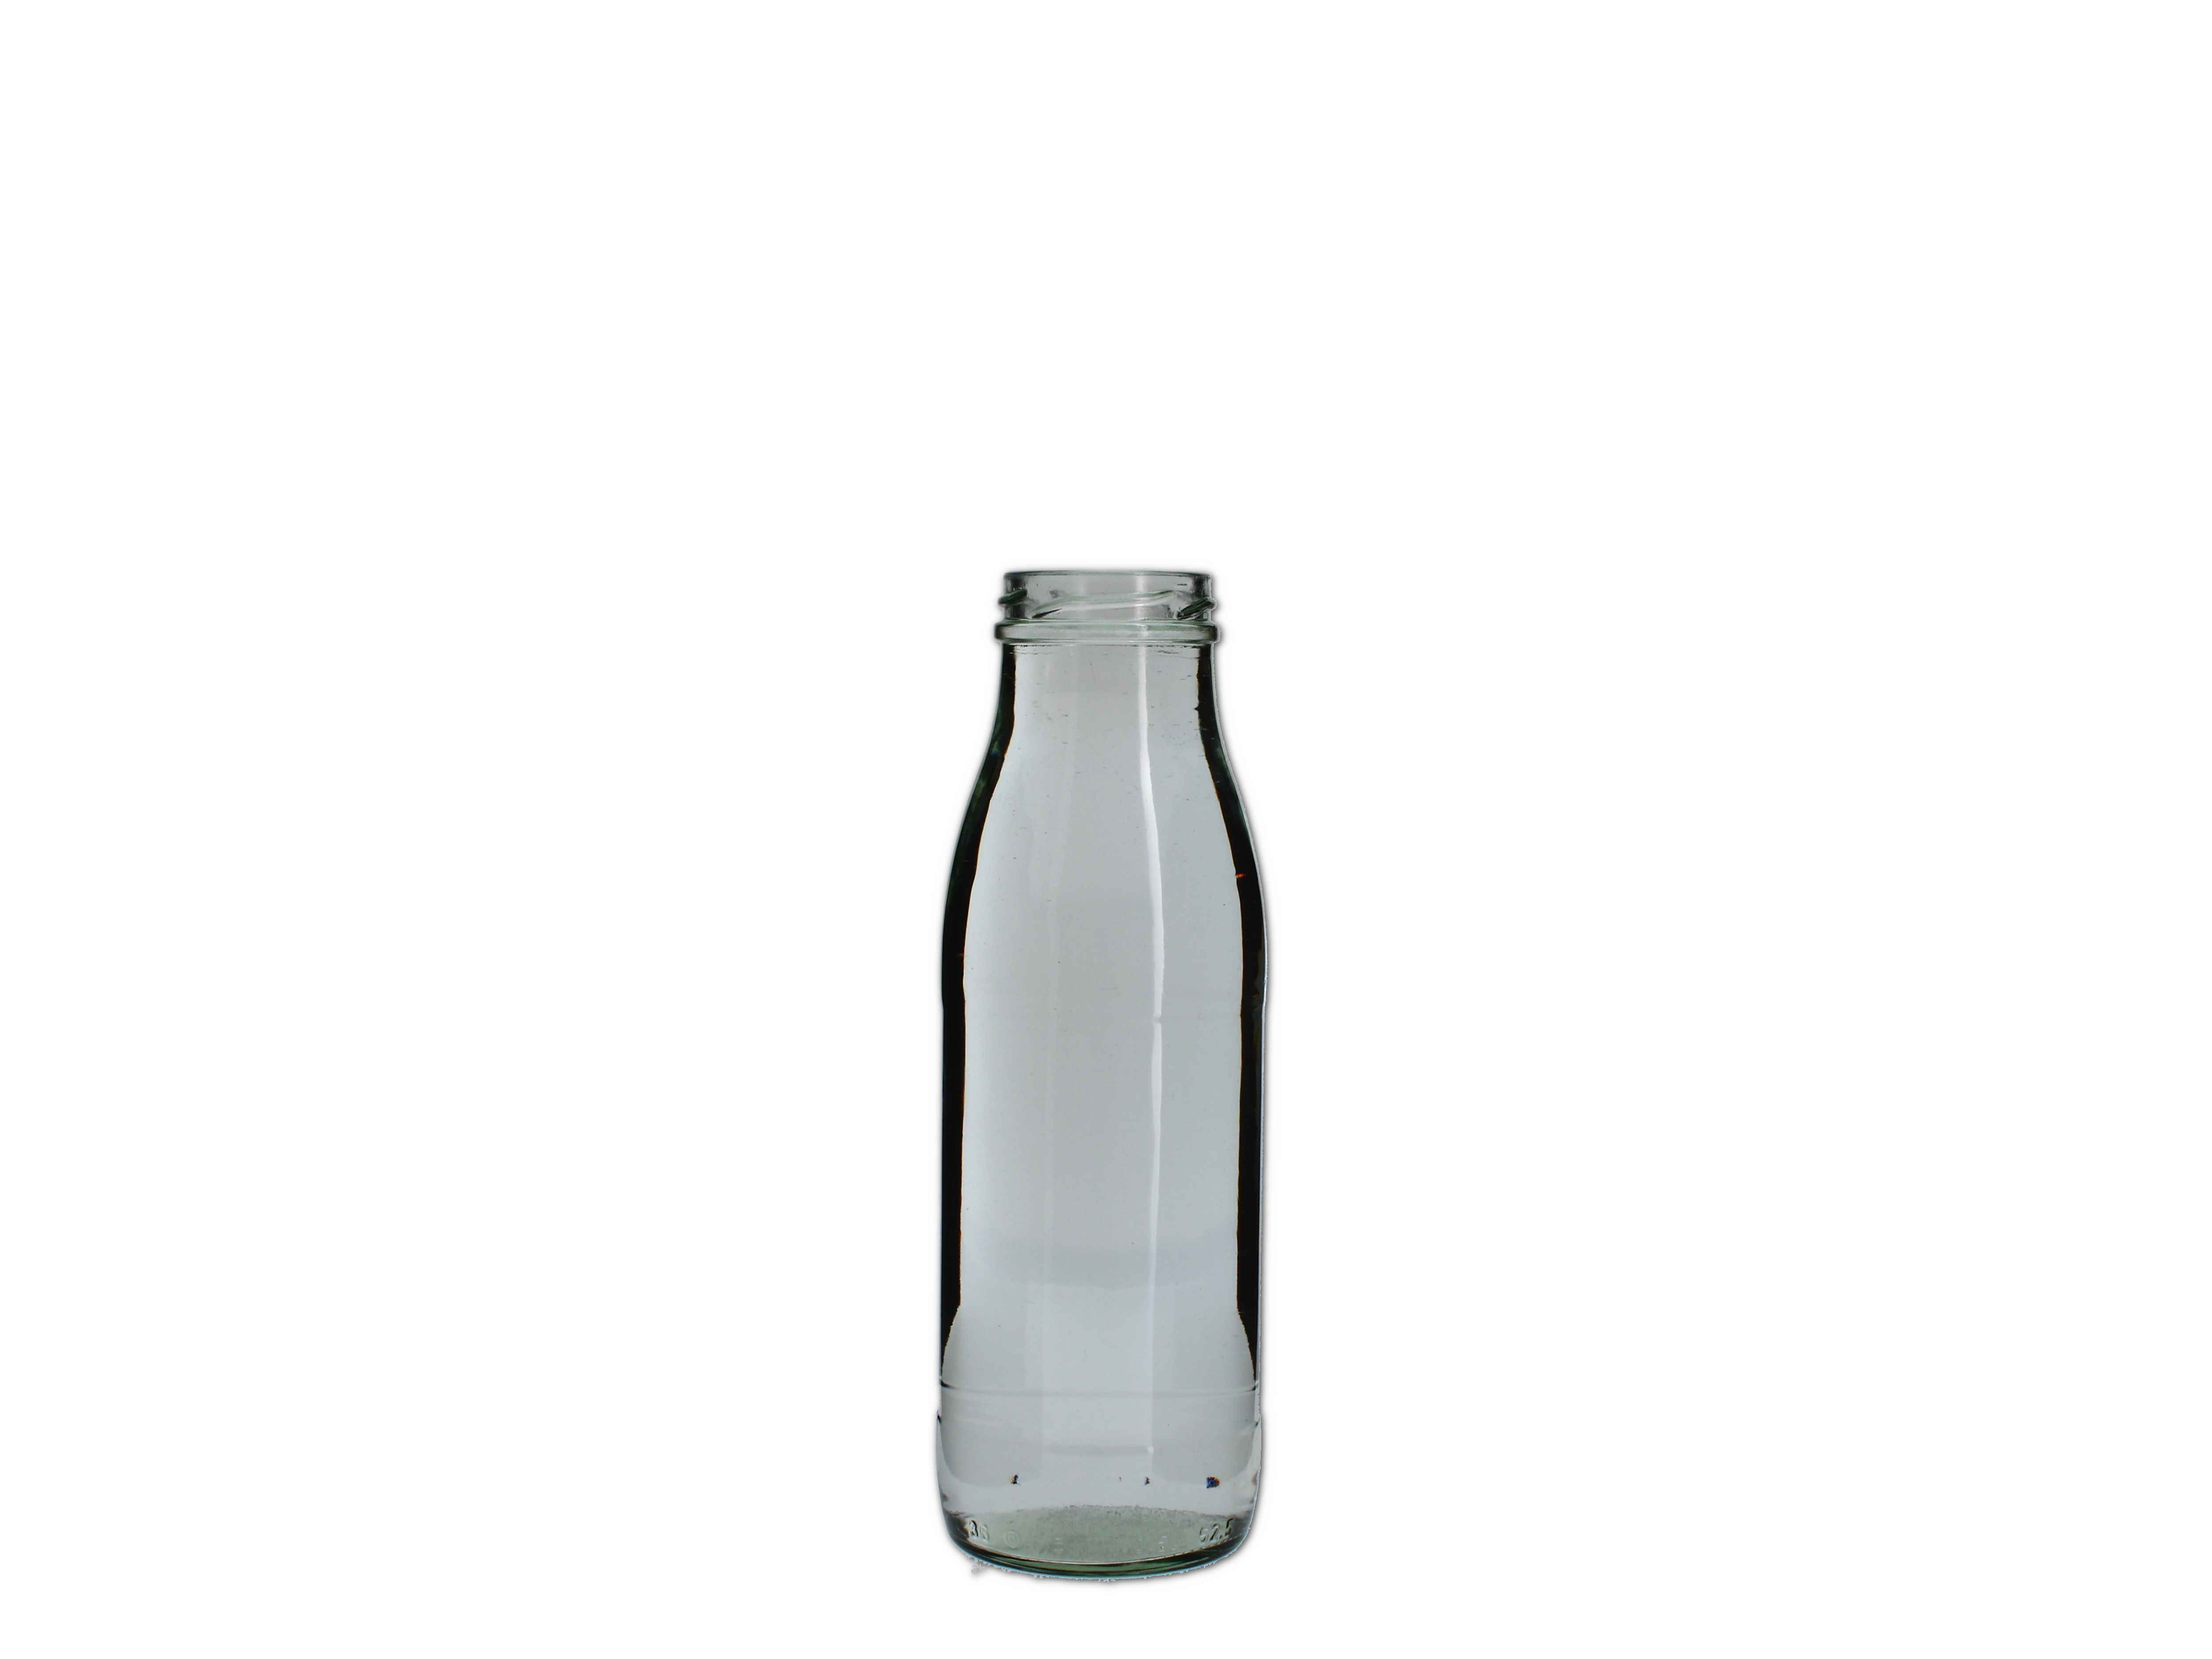    Saftflasche rund 500ml (TO48) - Abverkaufspreis